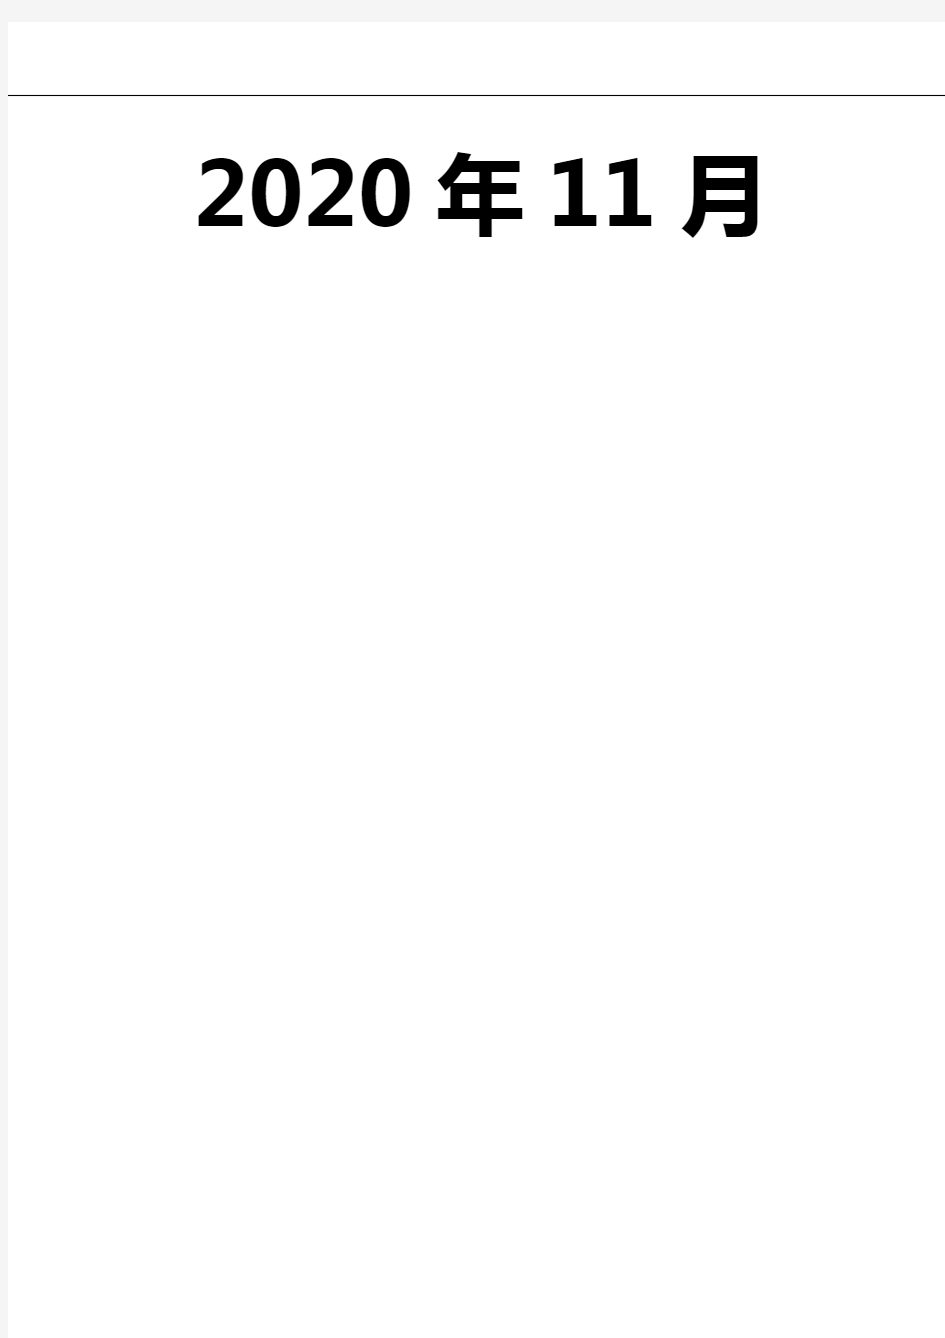 2020年蓝牙耳机行业市场分析报告